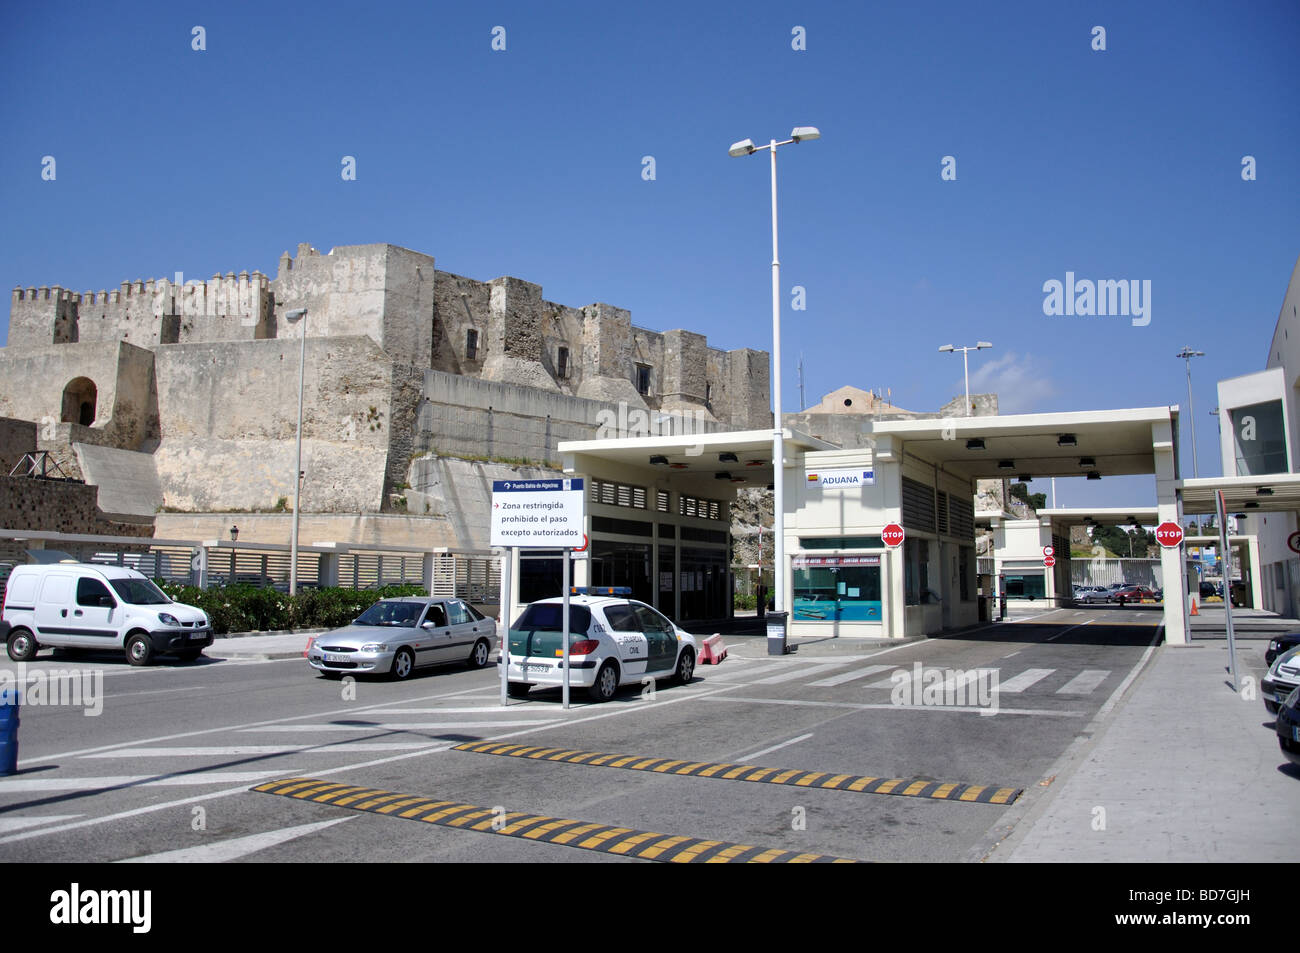 Tarifa Castle and border control at Port, Tarifa, Cadiz Province, Andalusia, Spain Stock Photo